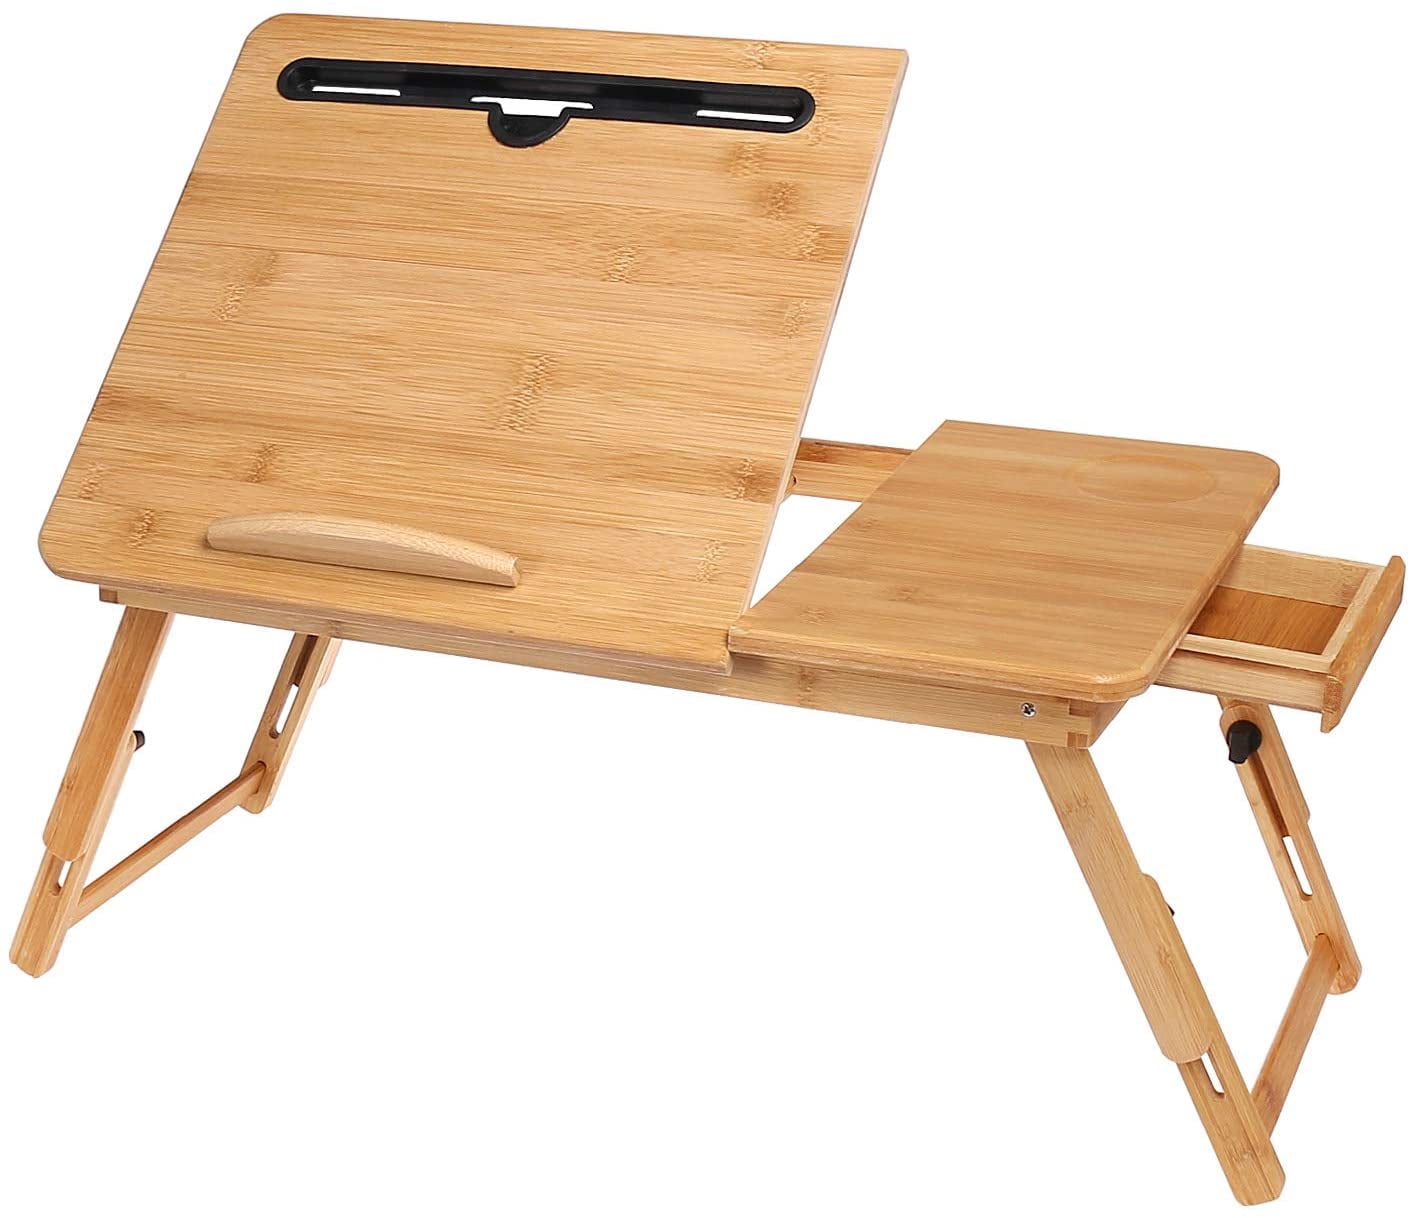 Gedeeltelijk verontschuldiging misdrijf Laptop Desk for Bed Sofa with Adjustable Tilting Top, Breakfast Serving  Tray with Folding Legs ,Multi Function Table, Floor Desk, 100% Bamboo  Nature - Walmart.com